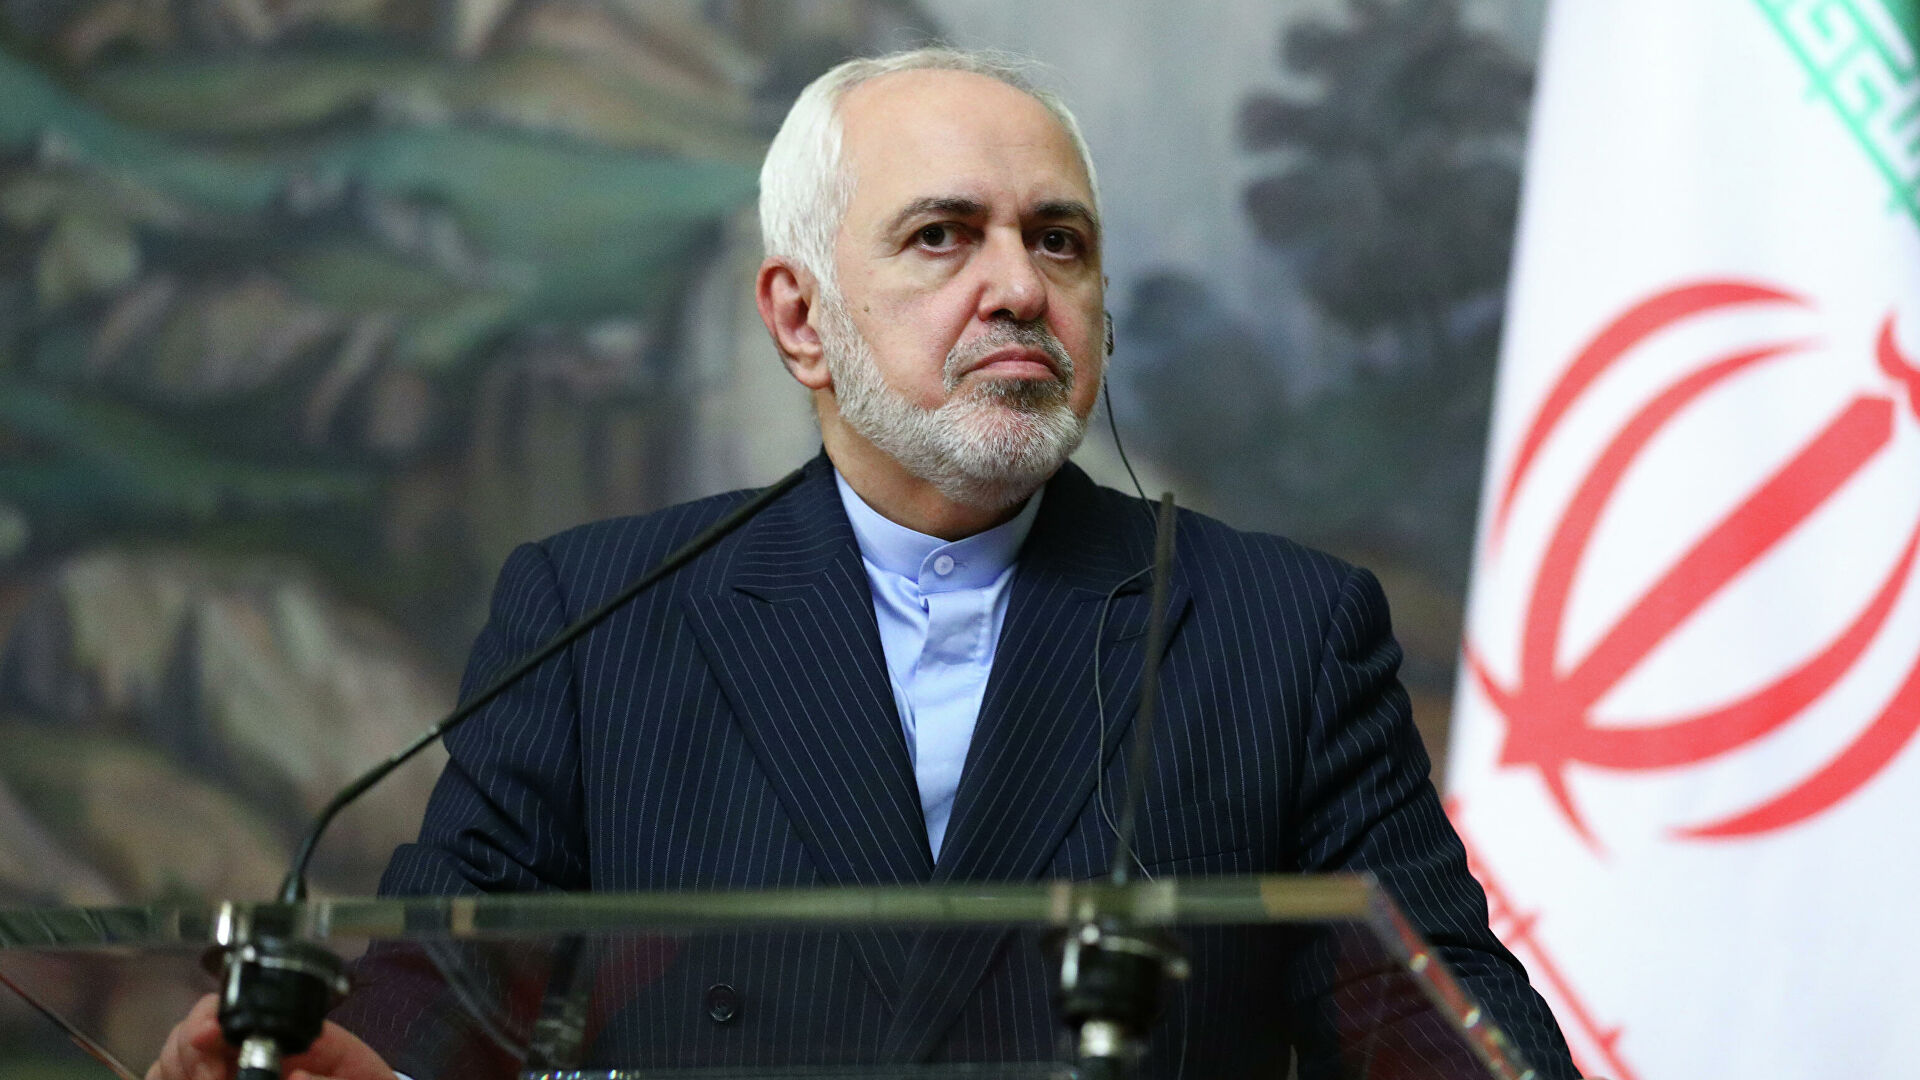 В Иране призвали США снять санкции